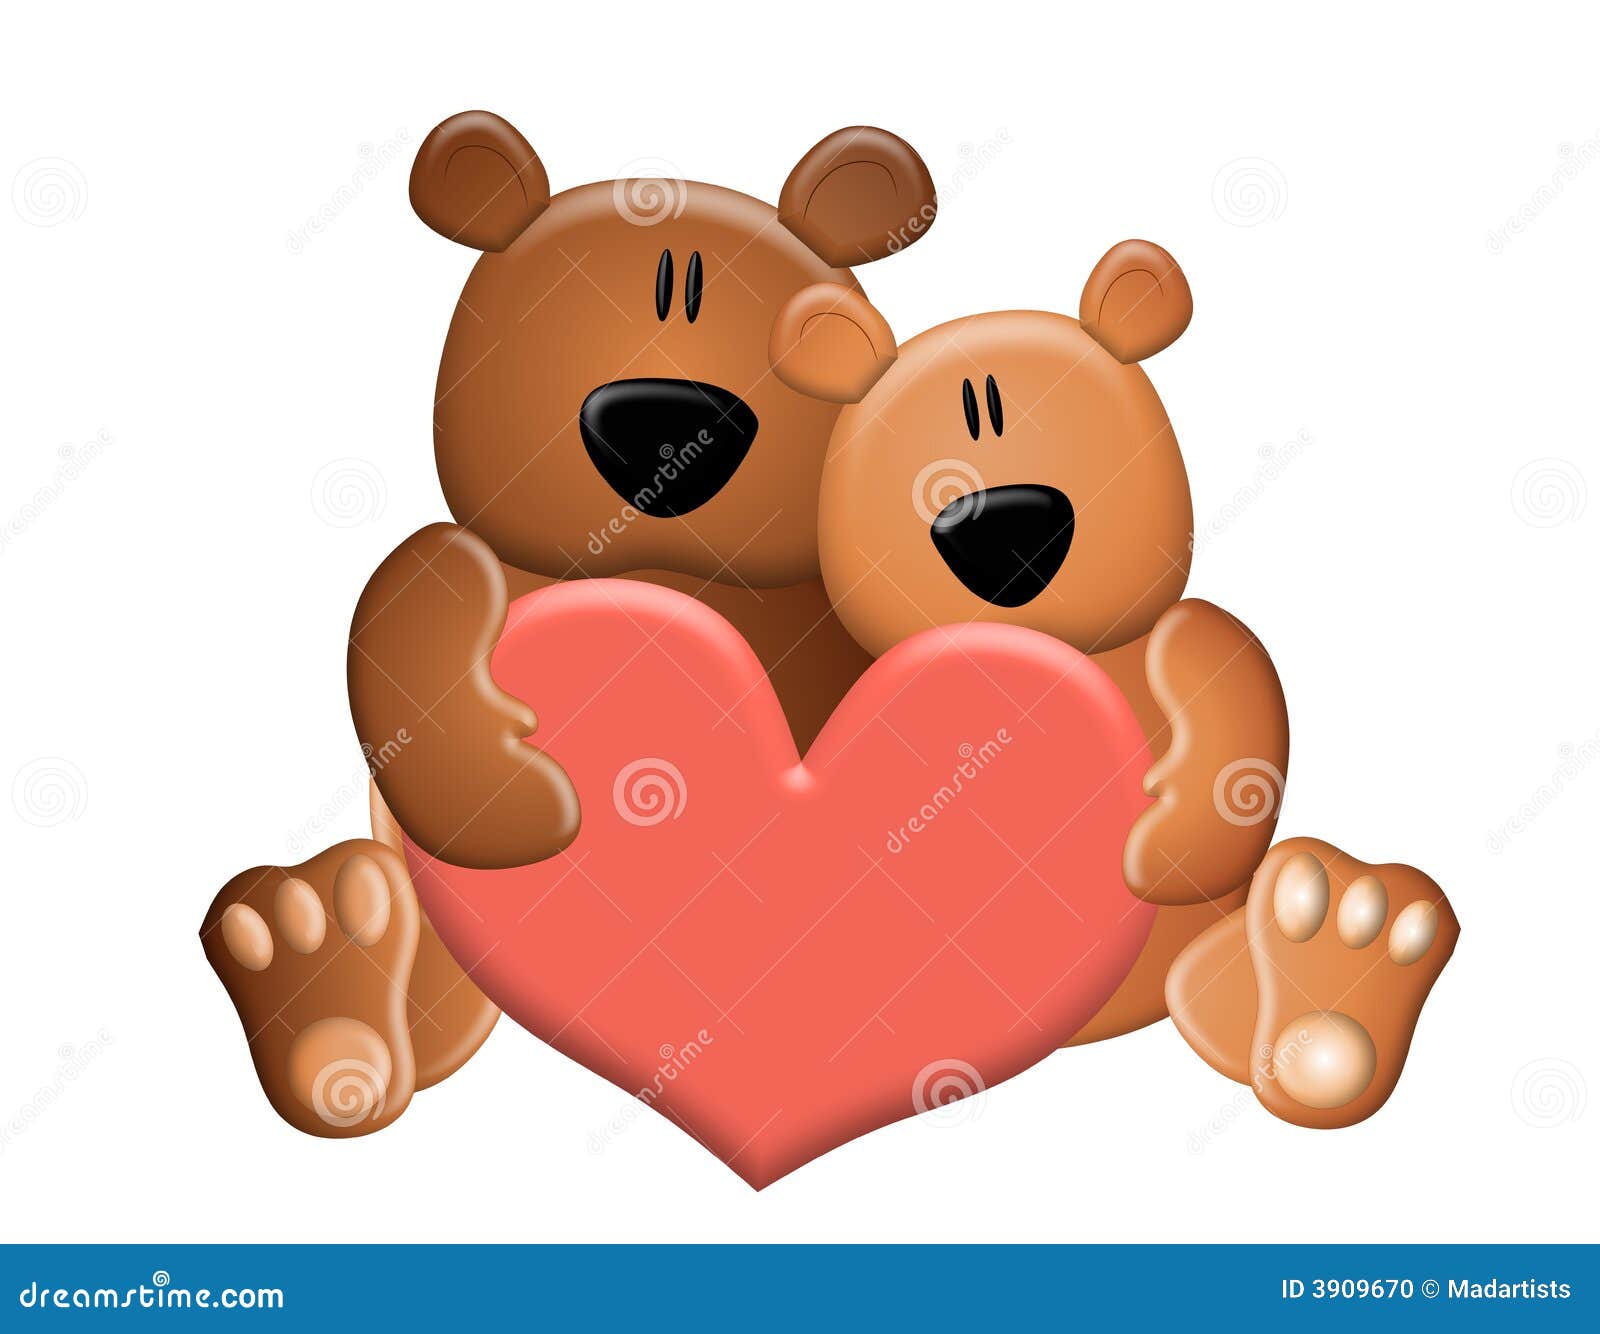 teddy bear with heart clipart - photo #30